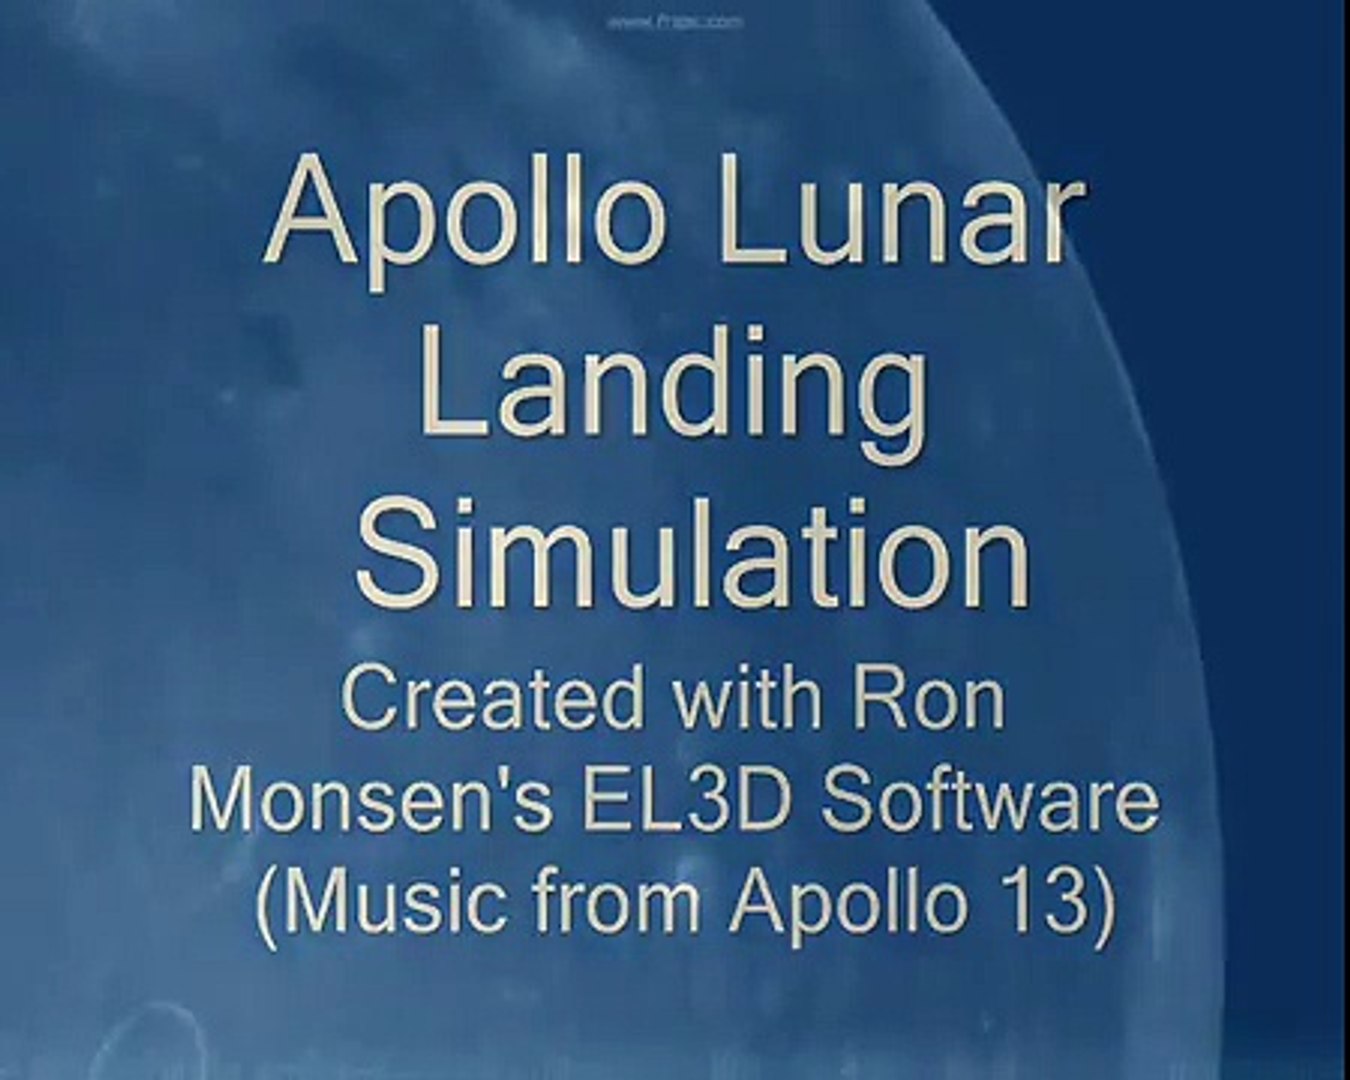 Apollo Lunar Landing Simulation